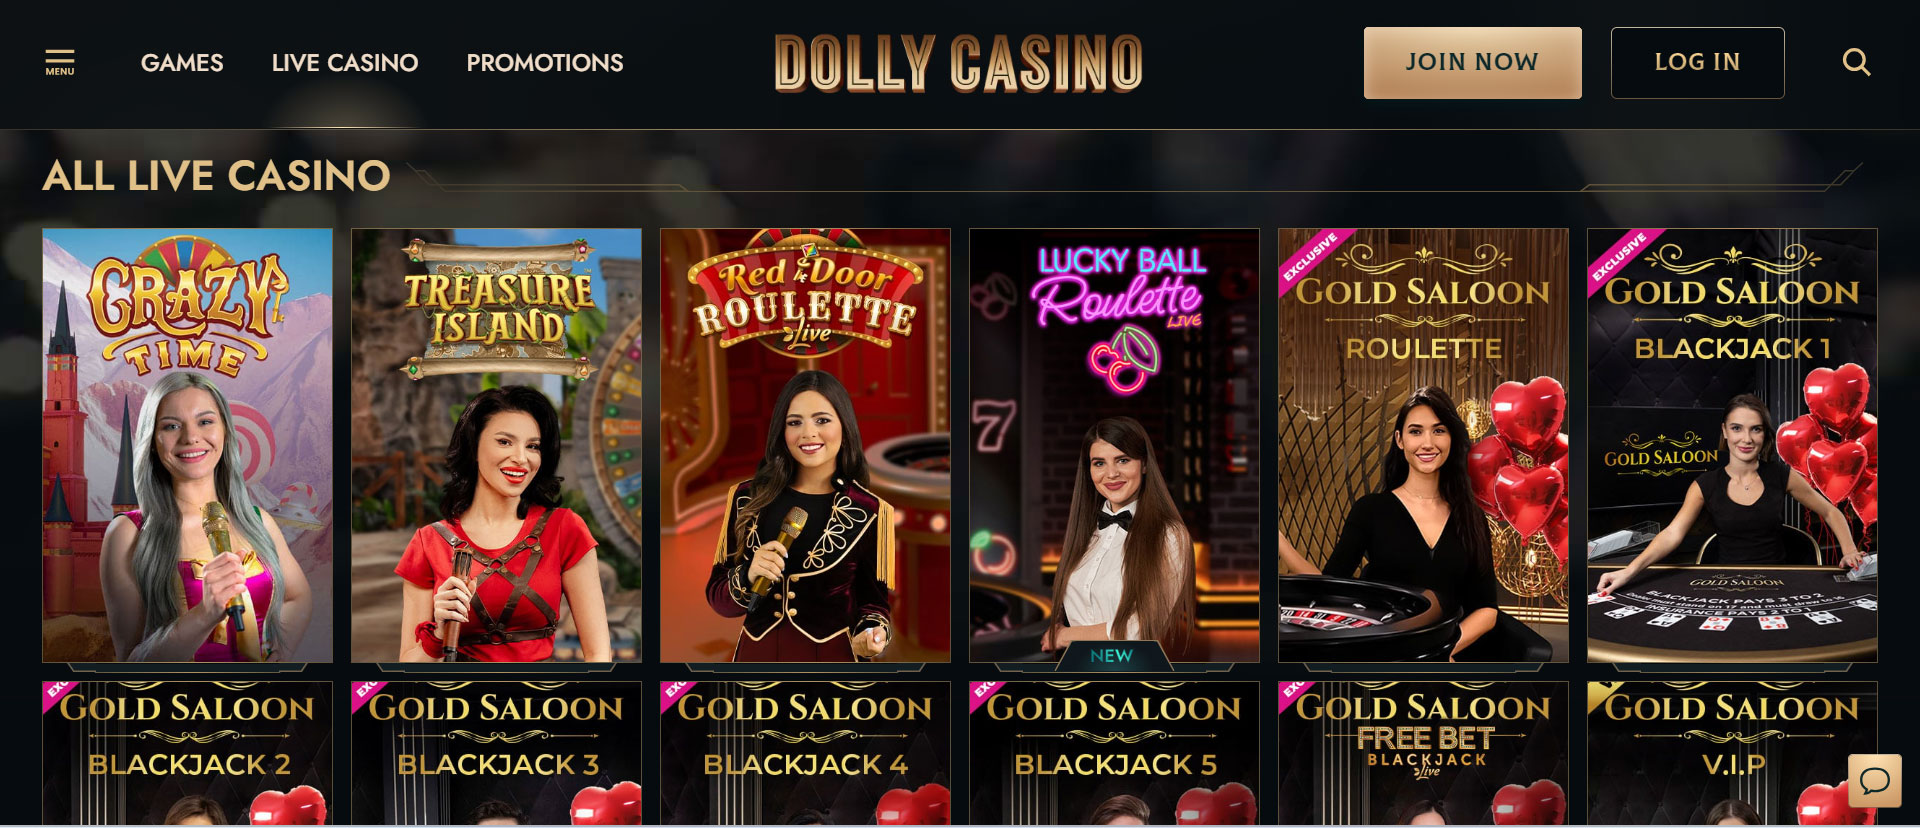 Dolly Casino Live Casino Games